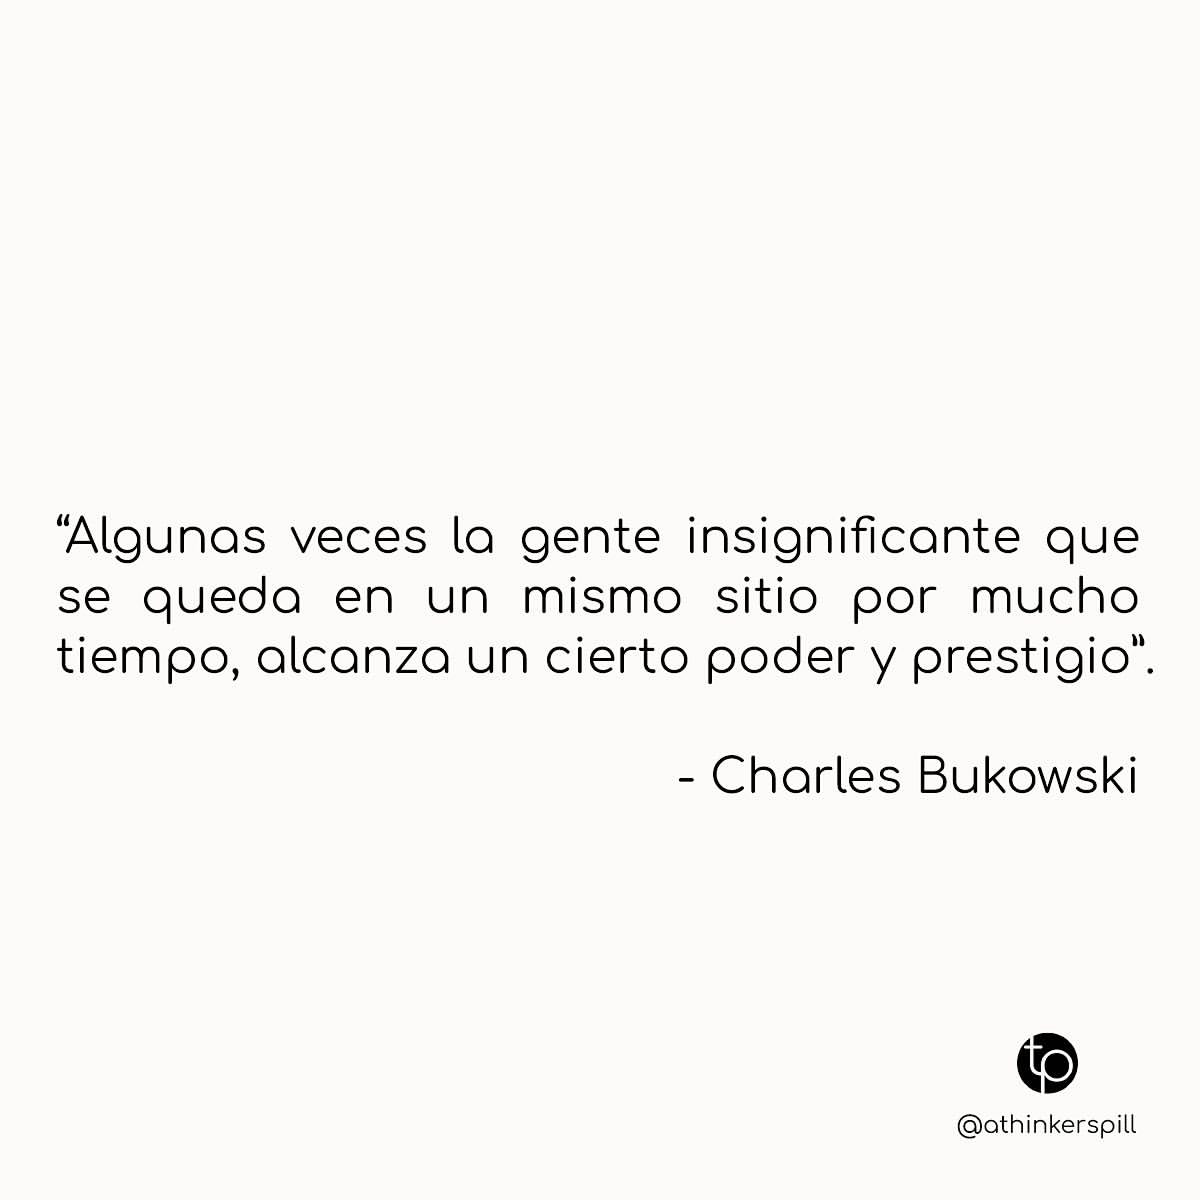 "Algunas veces la gente insignificante que se queda en un mismo sitio por mucho tiempo, alcanza un cierto poder y prestigio". Charles Bukowski.